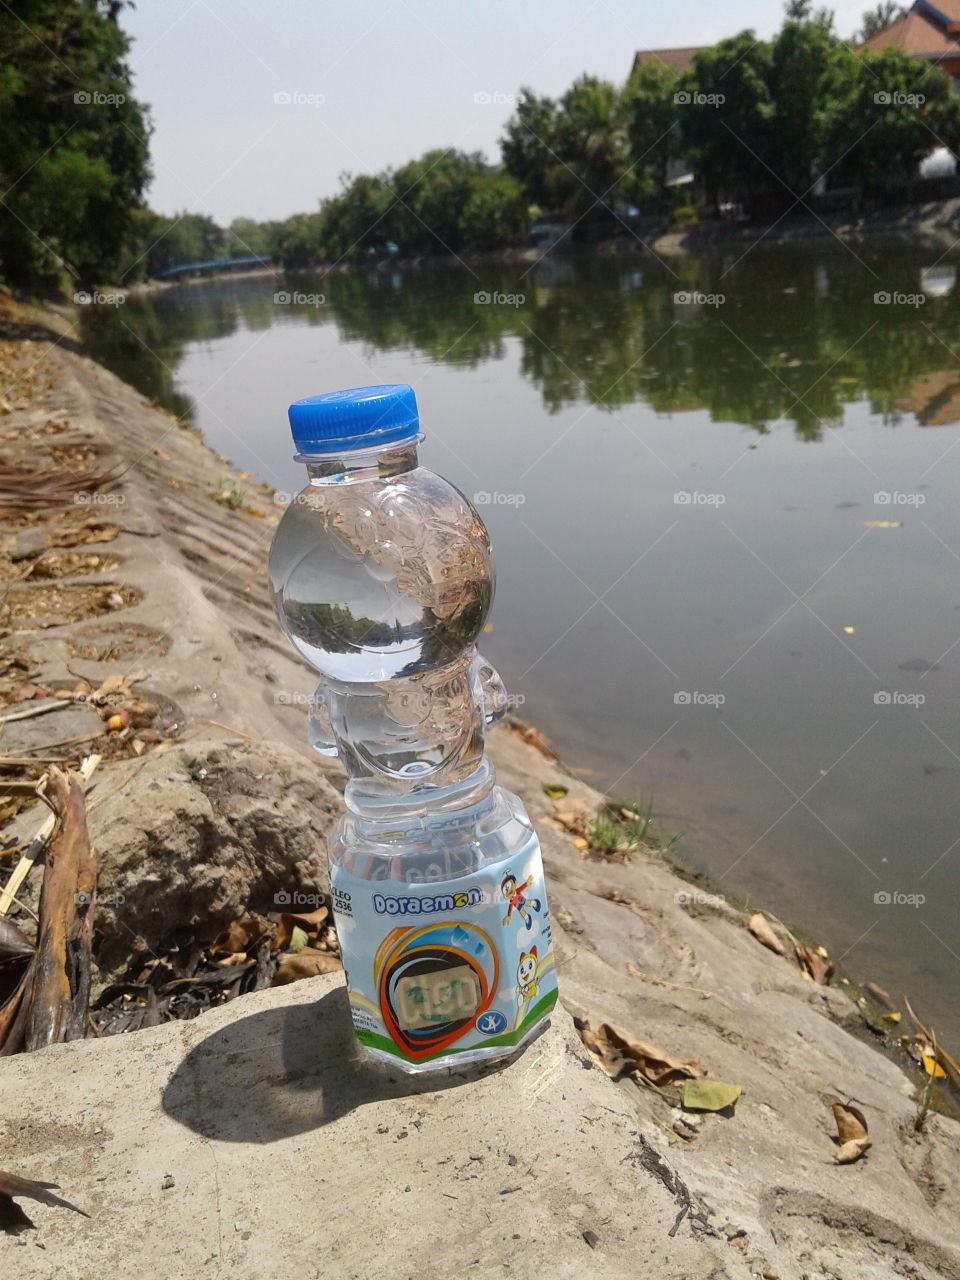 Doraemon bottle water beside the river...